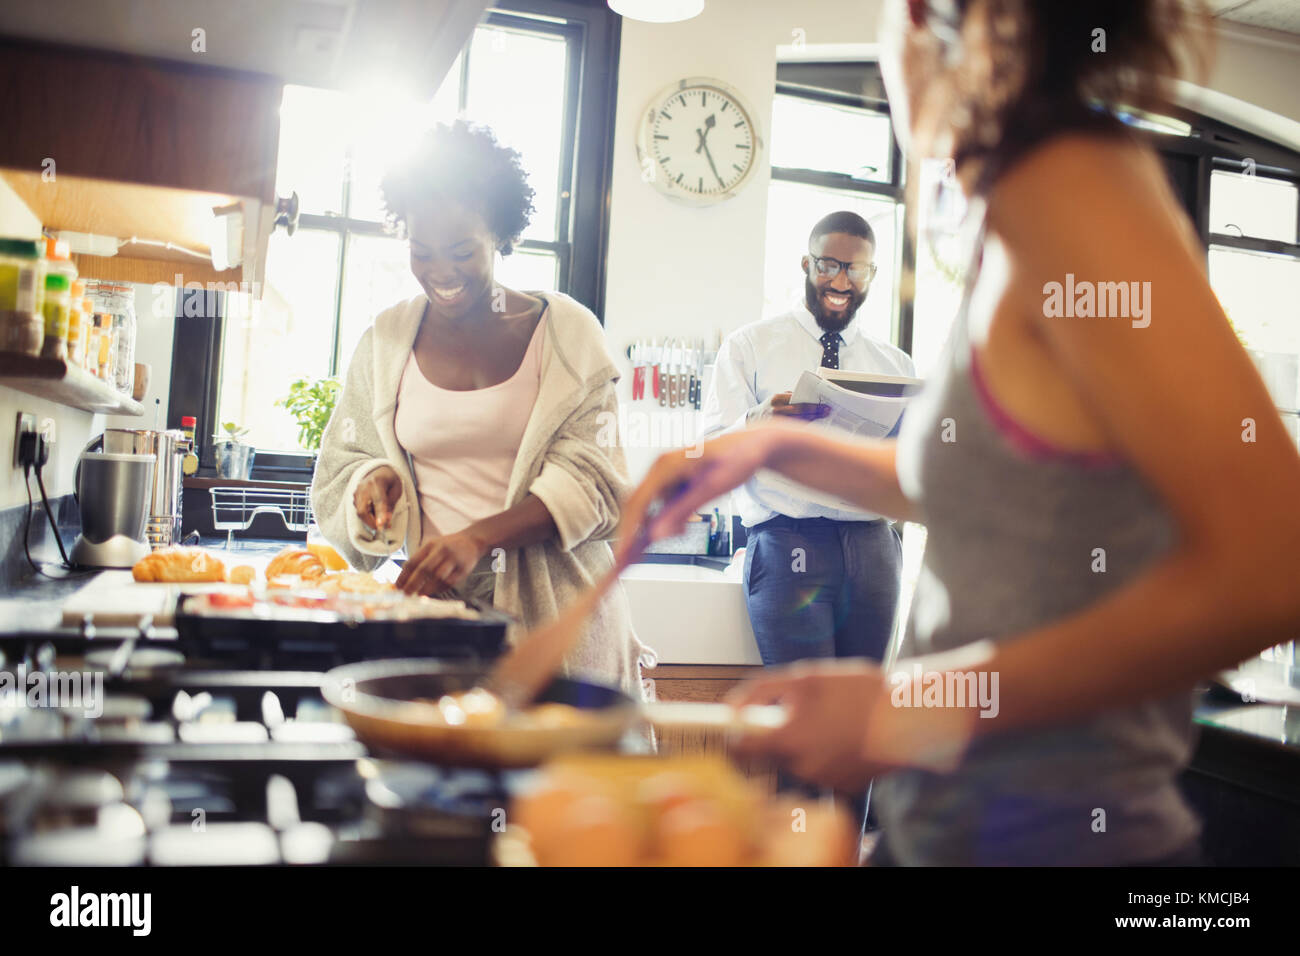 Freund Mitbewohner Kochen Frühstück in der Küche Stockfoto